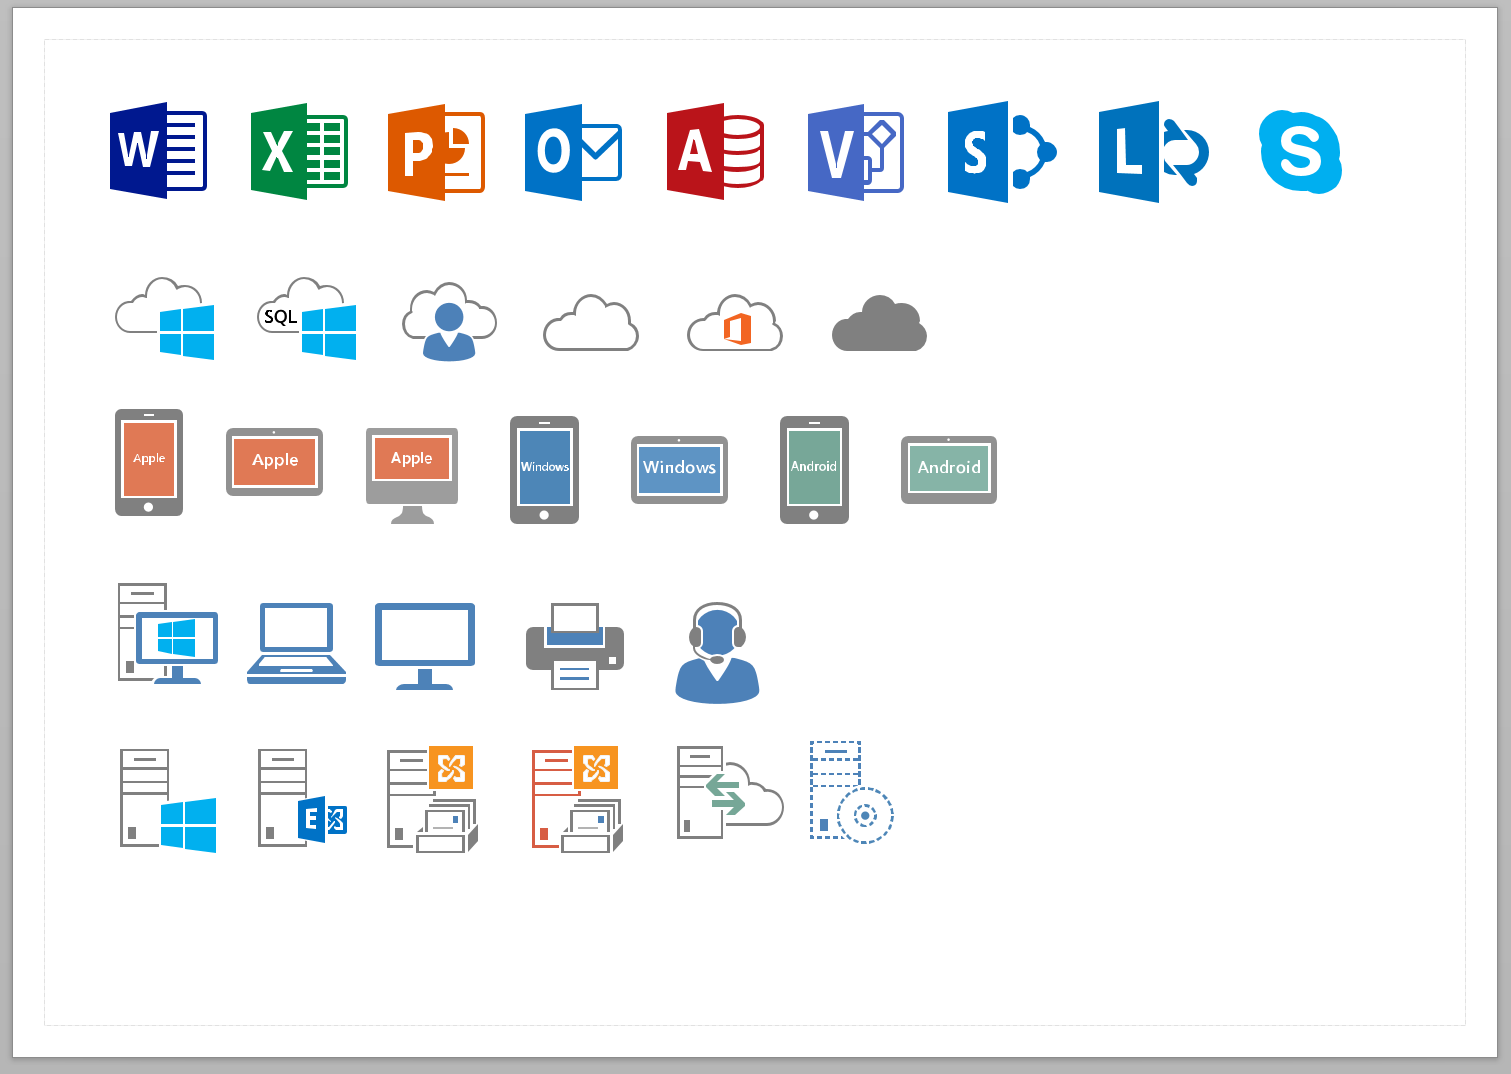 Microsoft Office 365 Visio Stencil